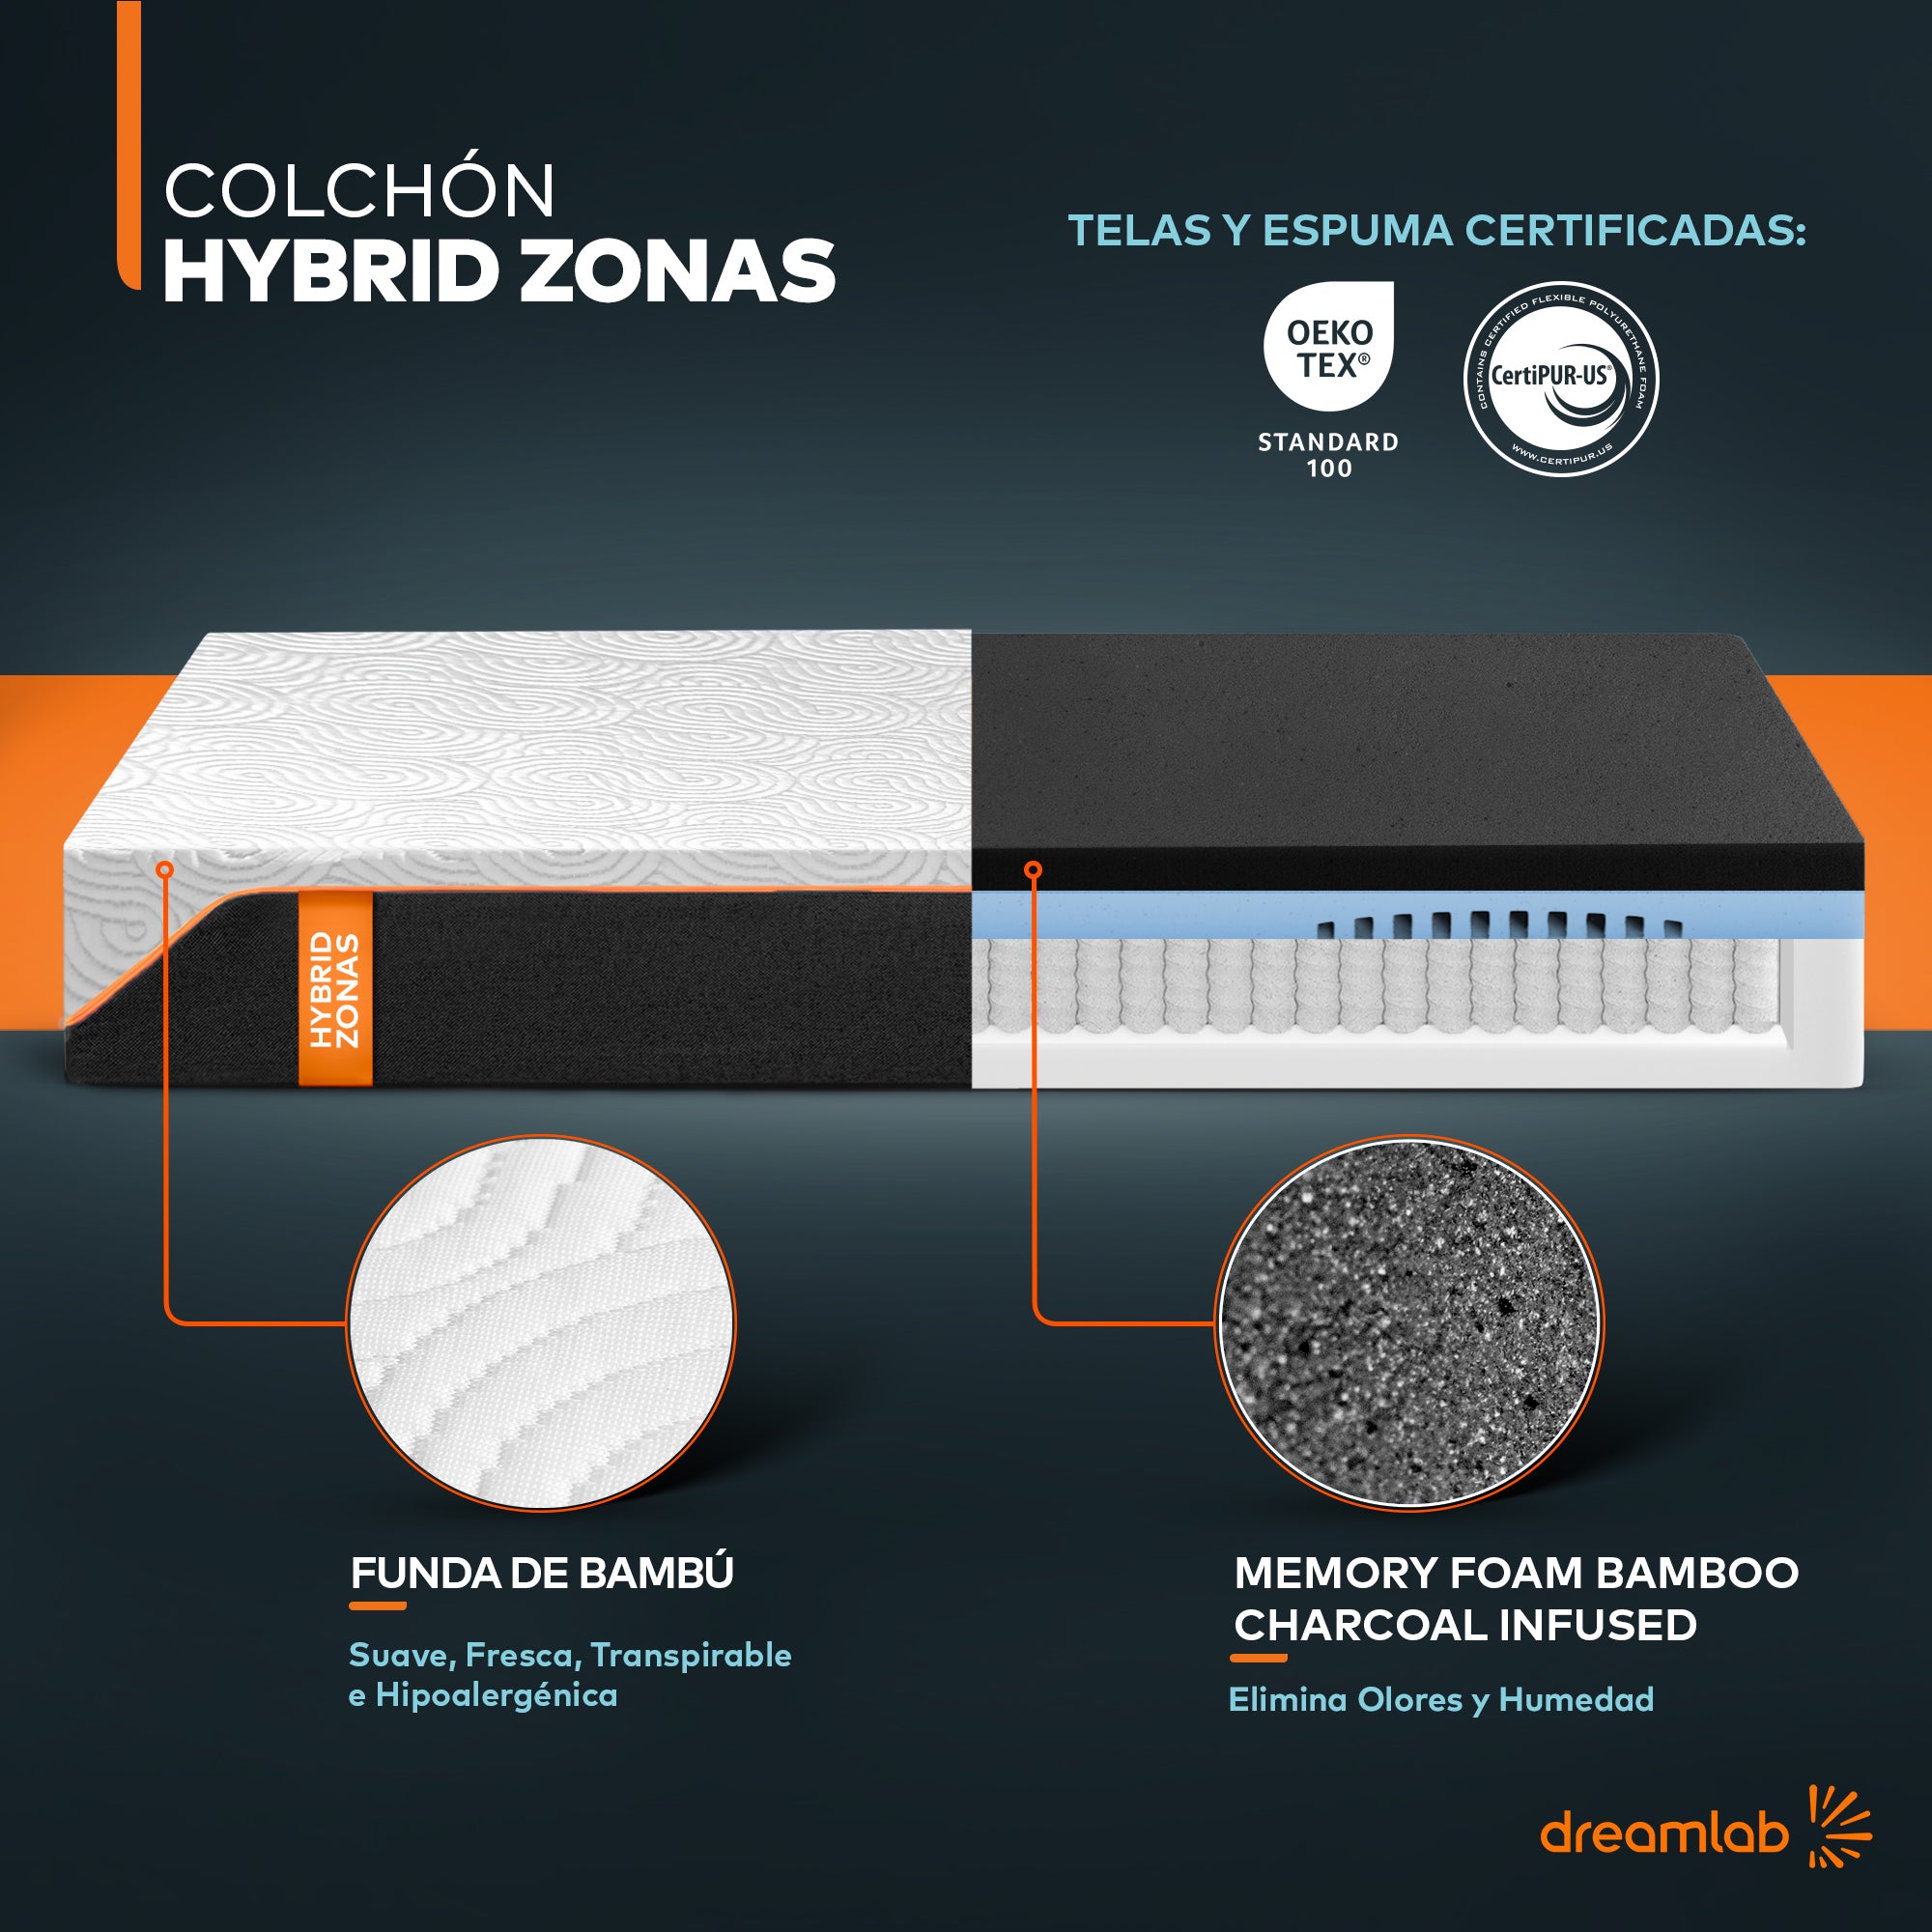 Colchón Hybrid Zonas